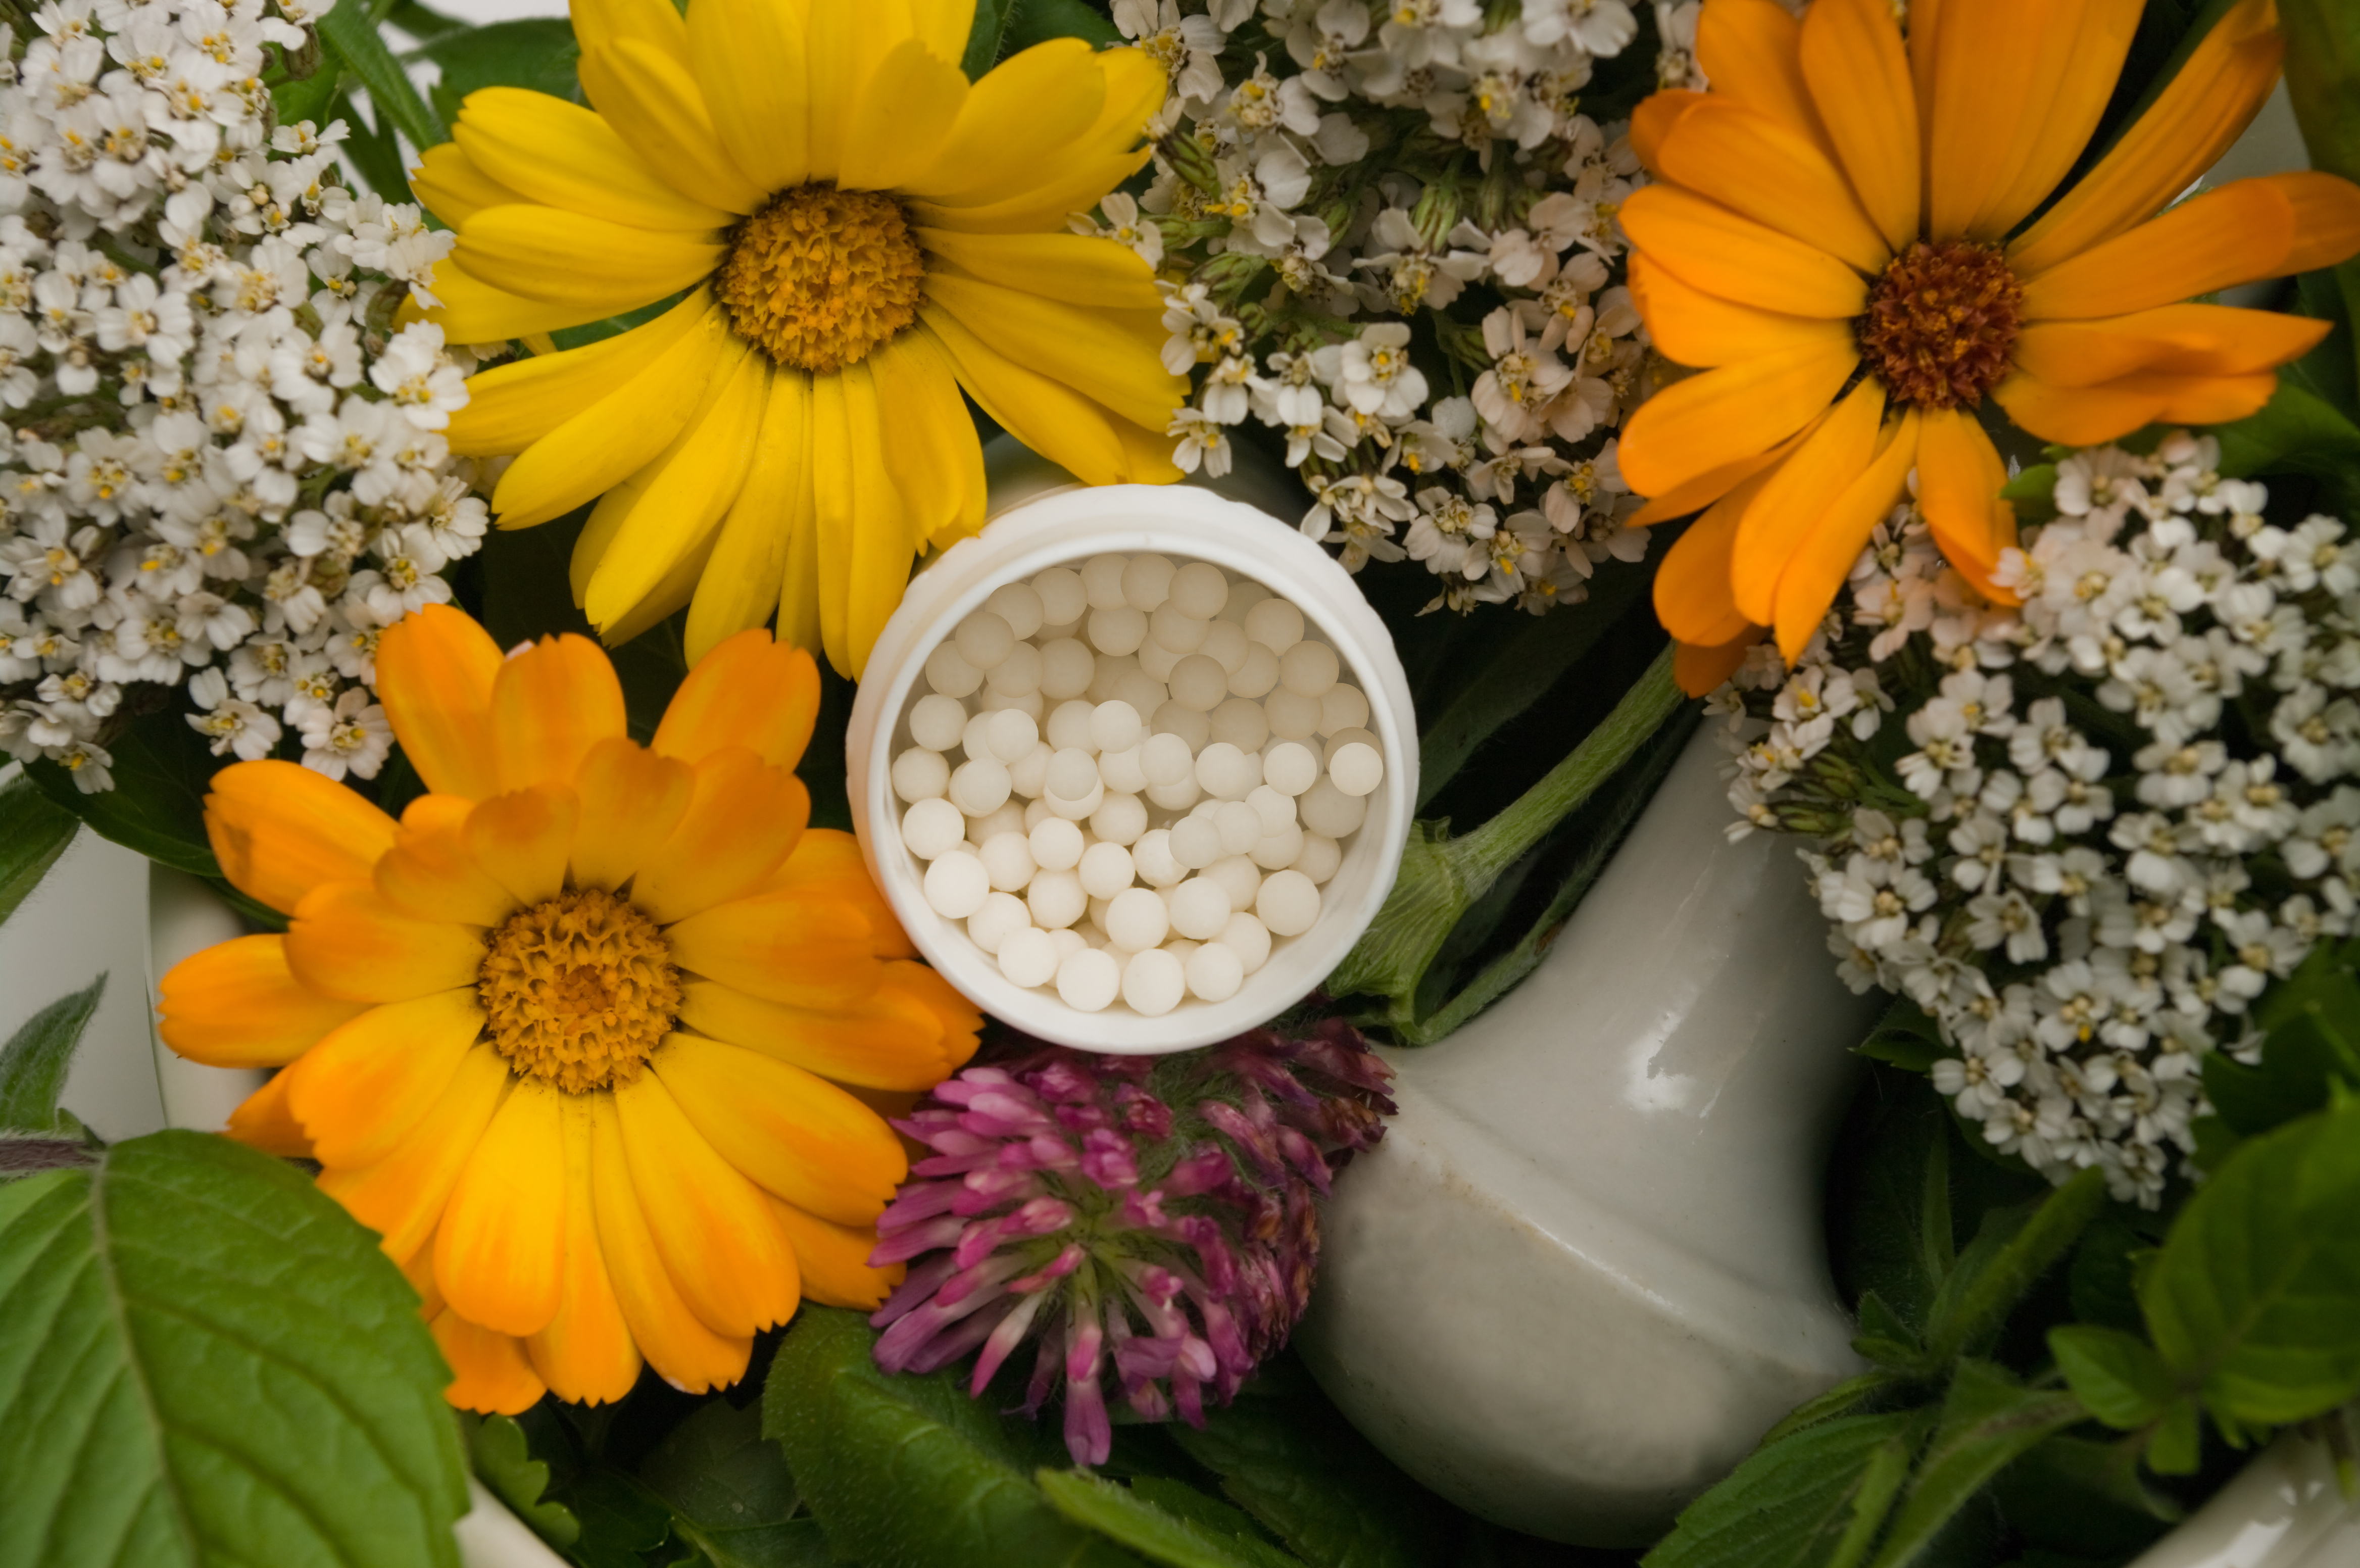 Oare pot sa slabesc cu ajutorul homeopatiei? | pvctermopane.ro